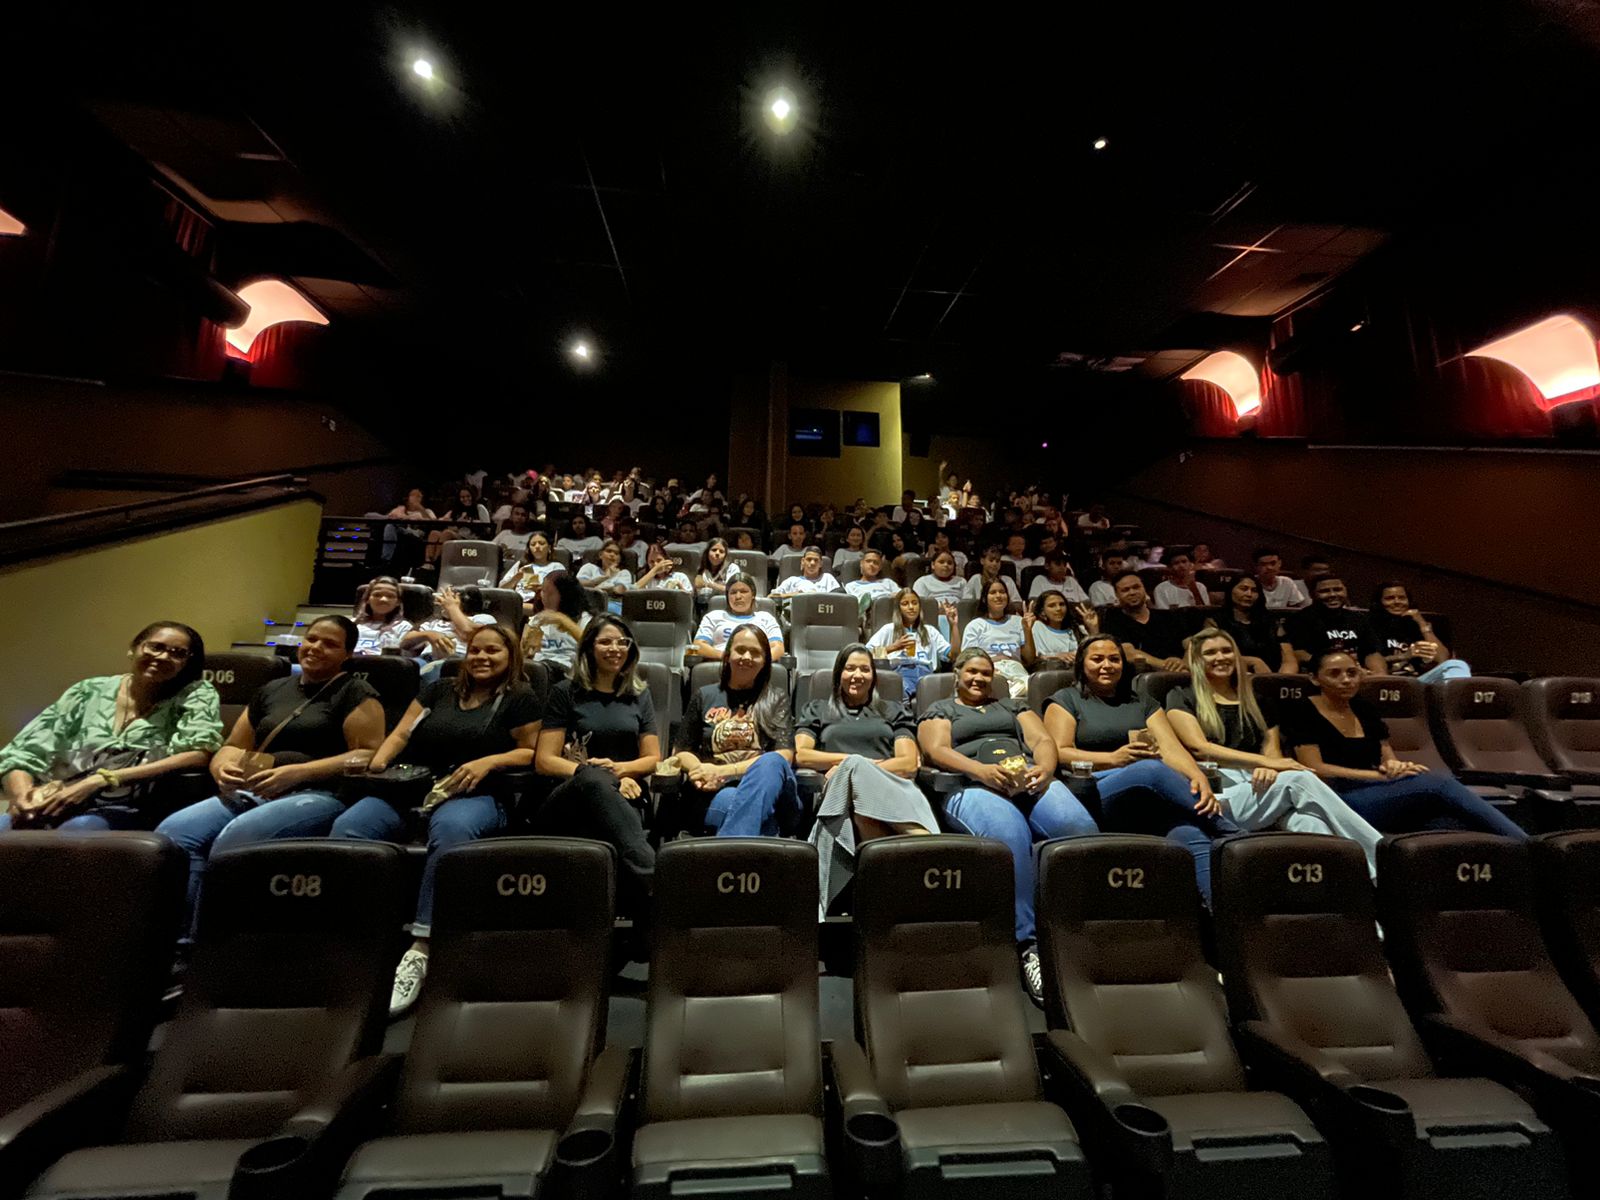 Prefeitura de Sapé leva adolescentes ao cinema para assistir ‘Pantera Negra’